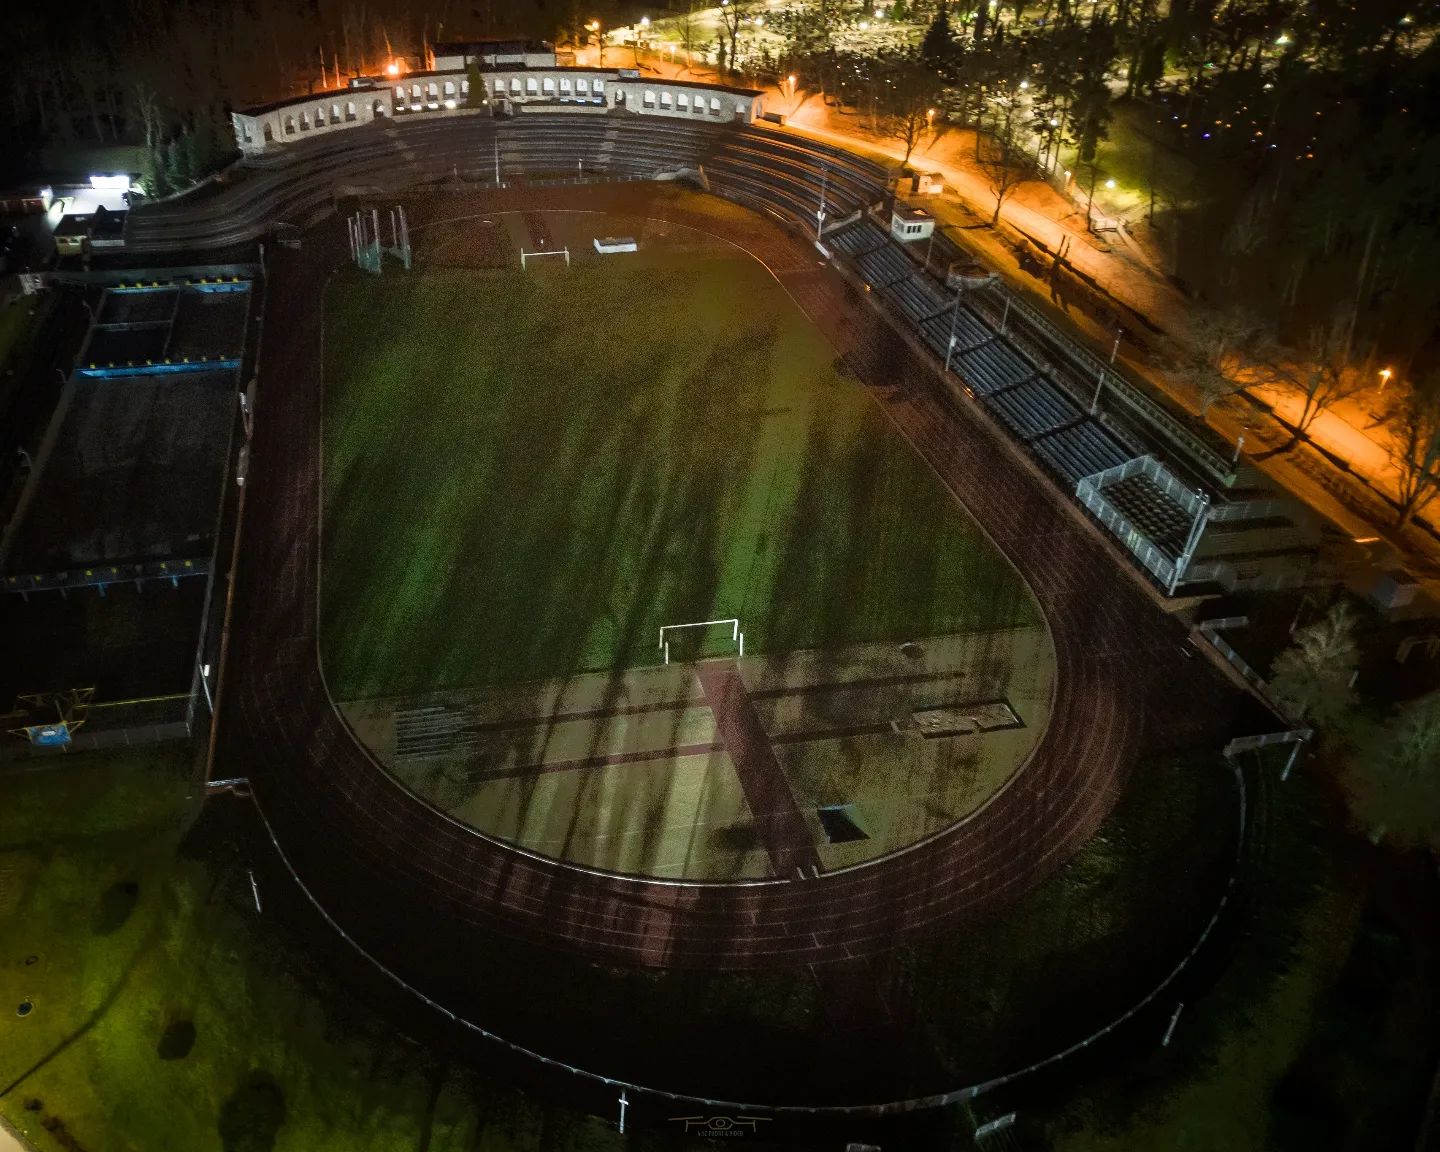 Nocny widok na stadion w Słubicach z lotu ptaka 